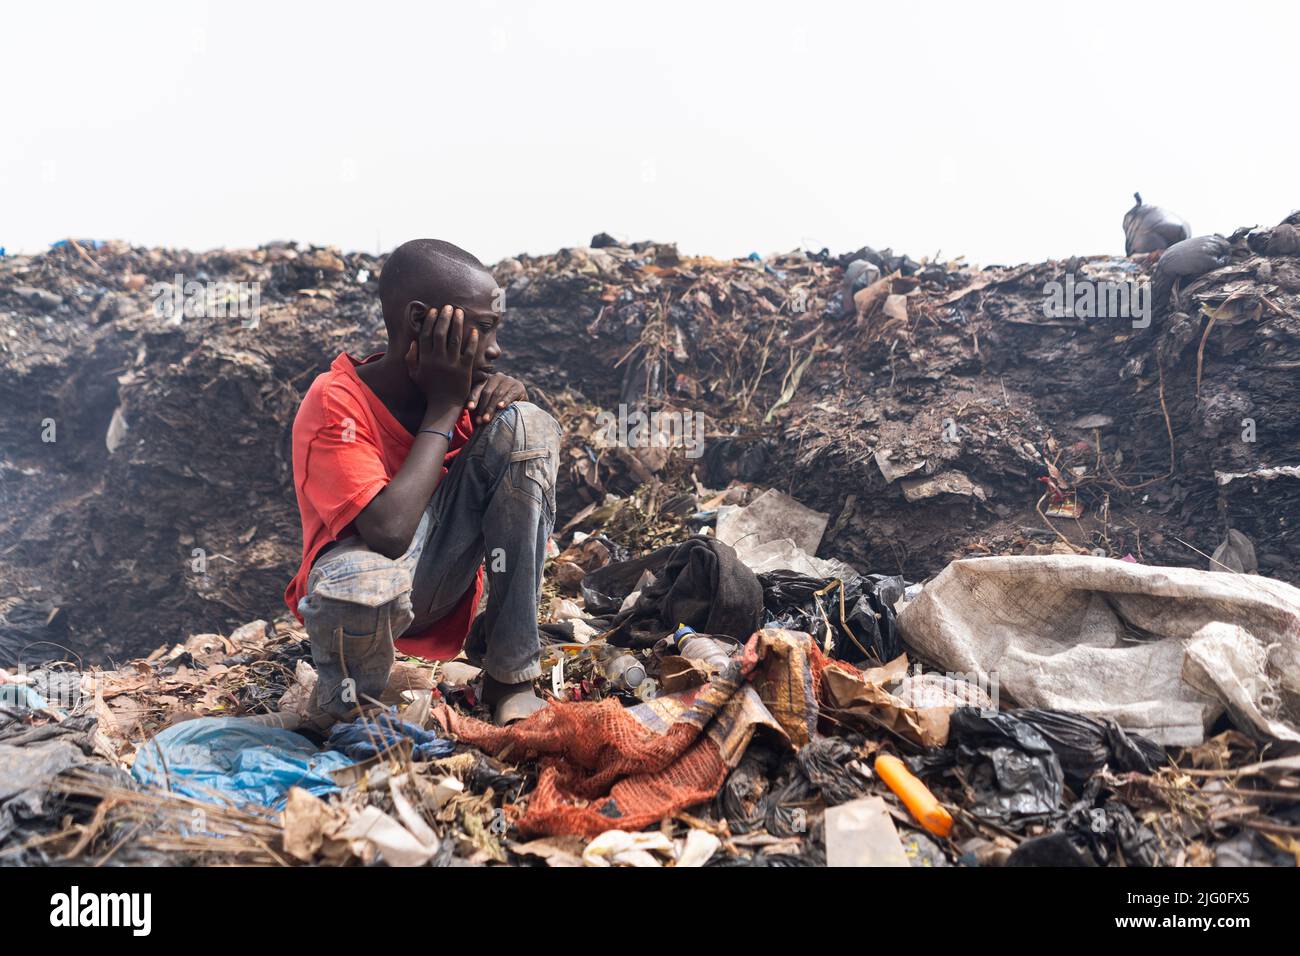 Pobre chico de los barrios marginales africanos sentado frente a una gran pila de basura en medio de un enorme vertedero urbano después de un día de trabajo en busca de reciclable Foto de stock